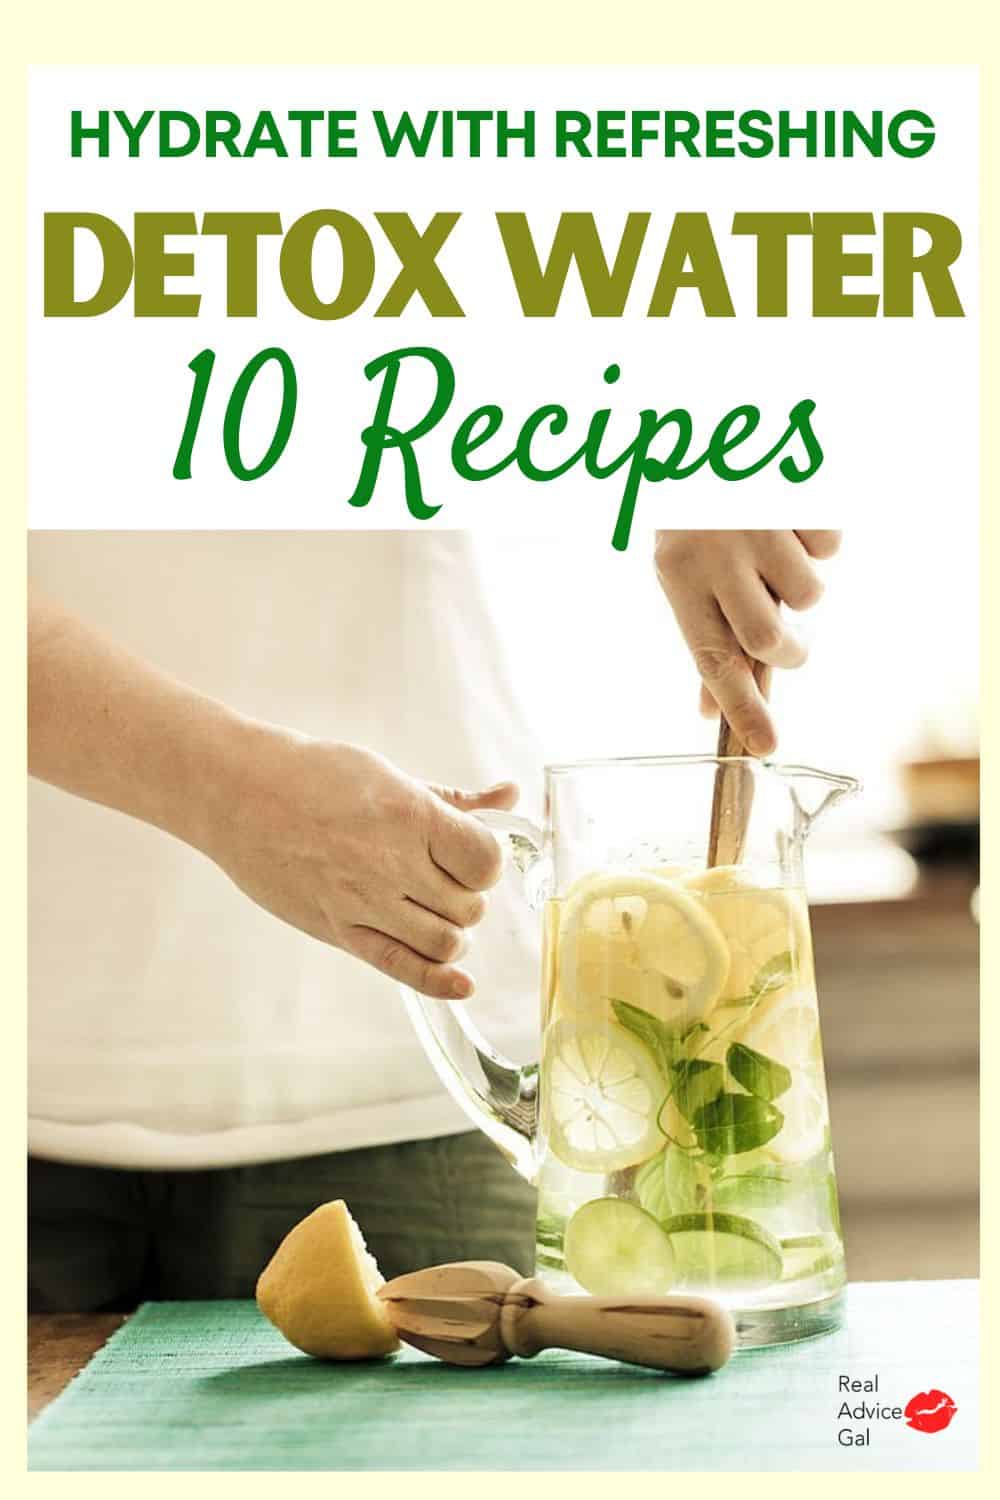 Detox water recipes